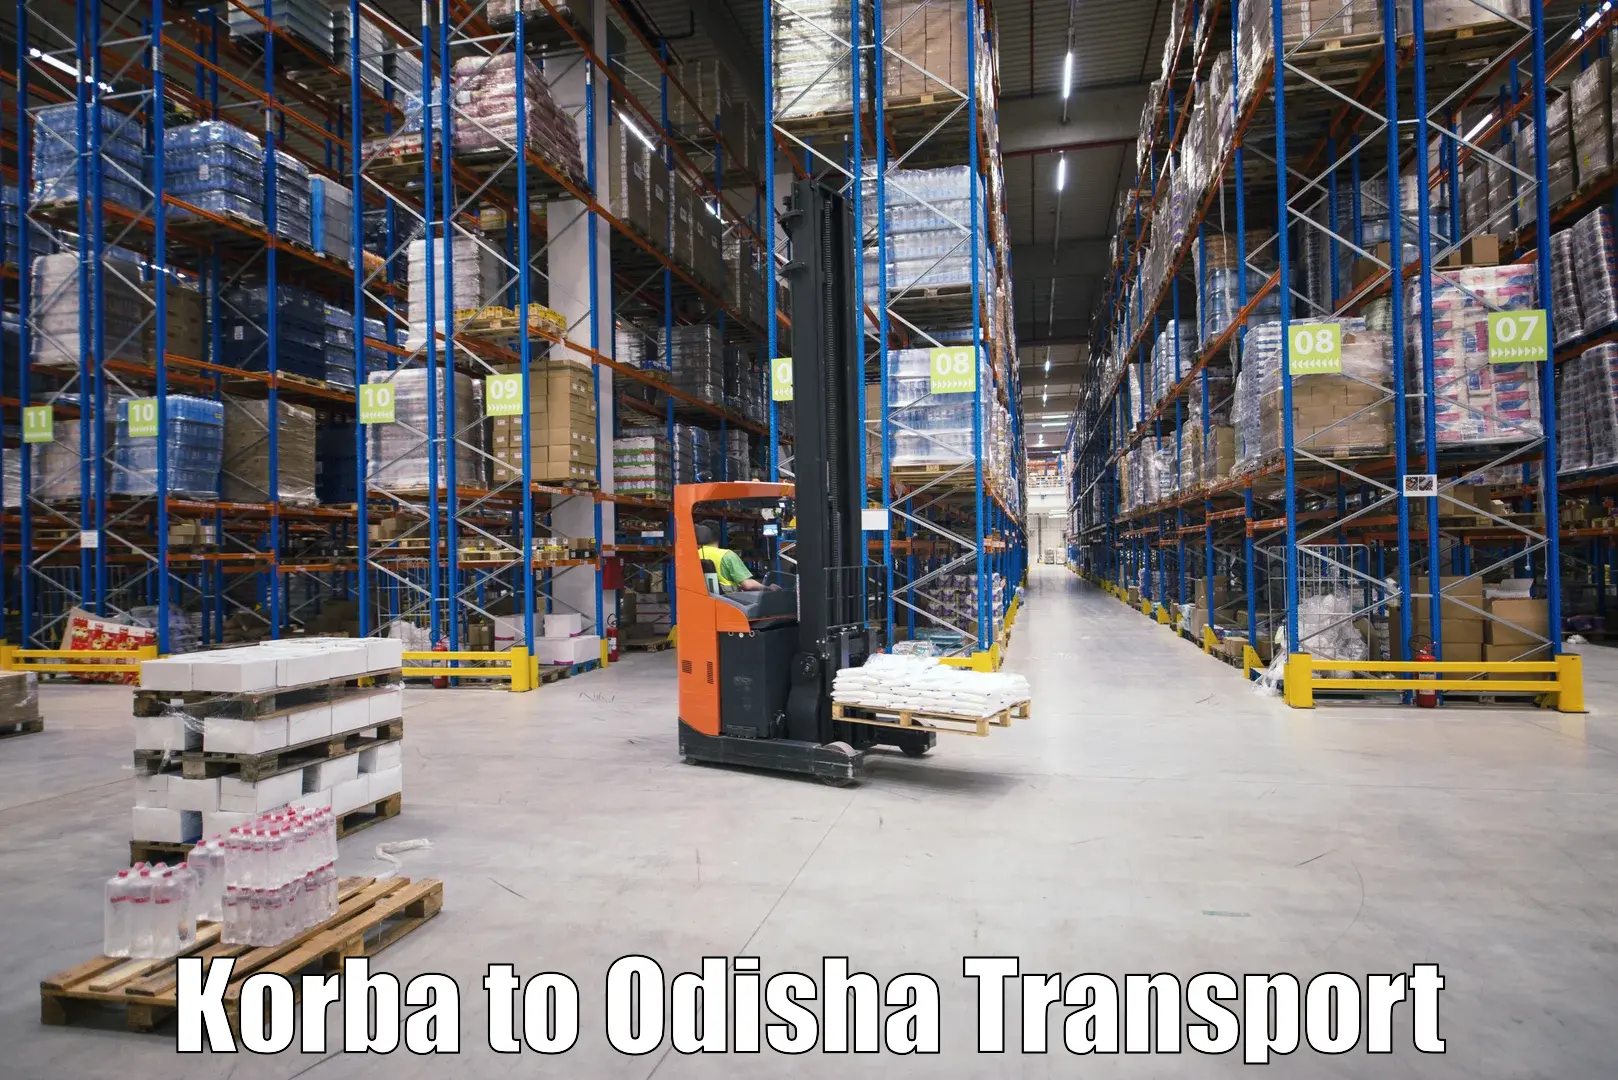 Online transport booking Korba to Baisinga